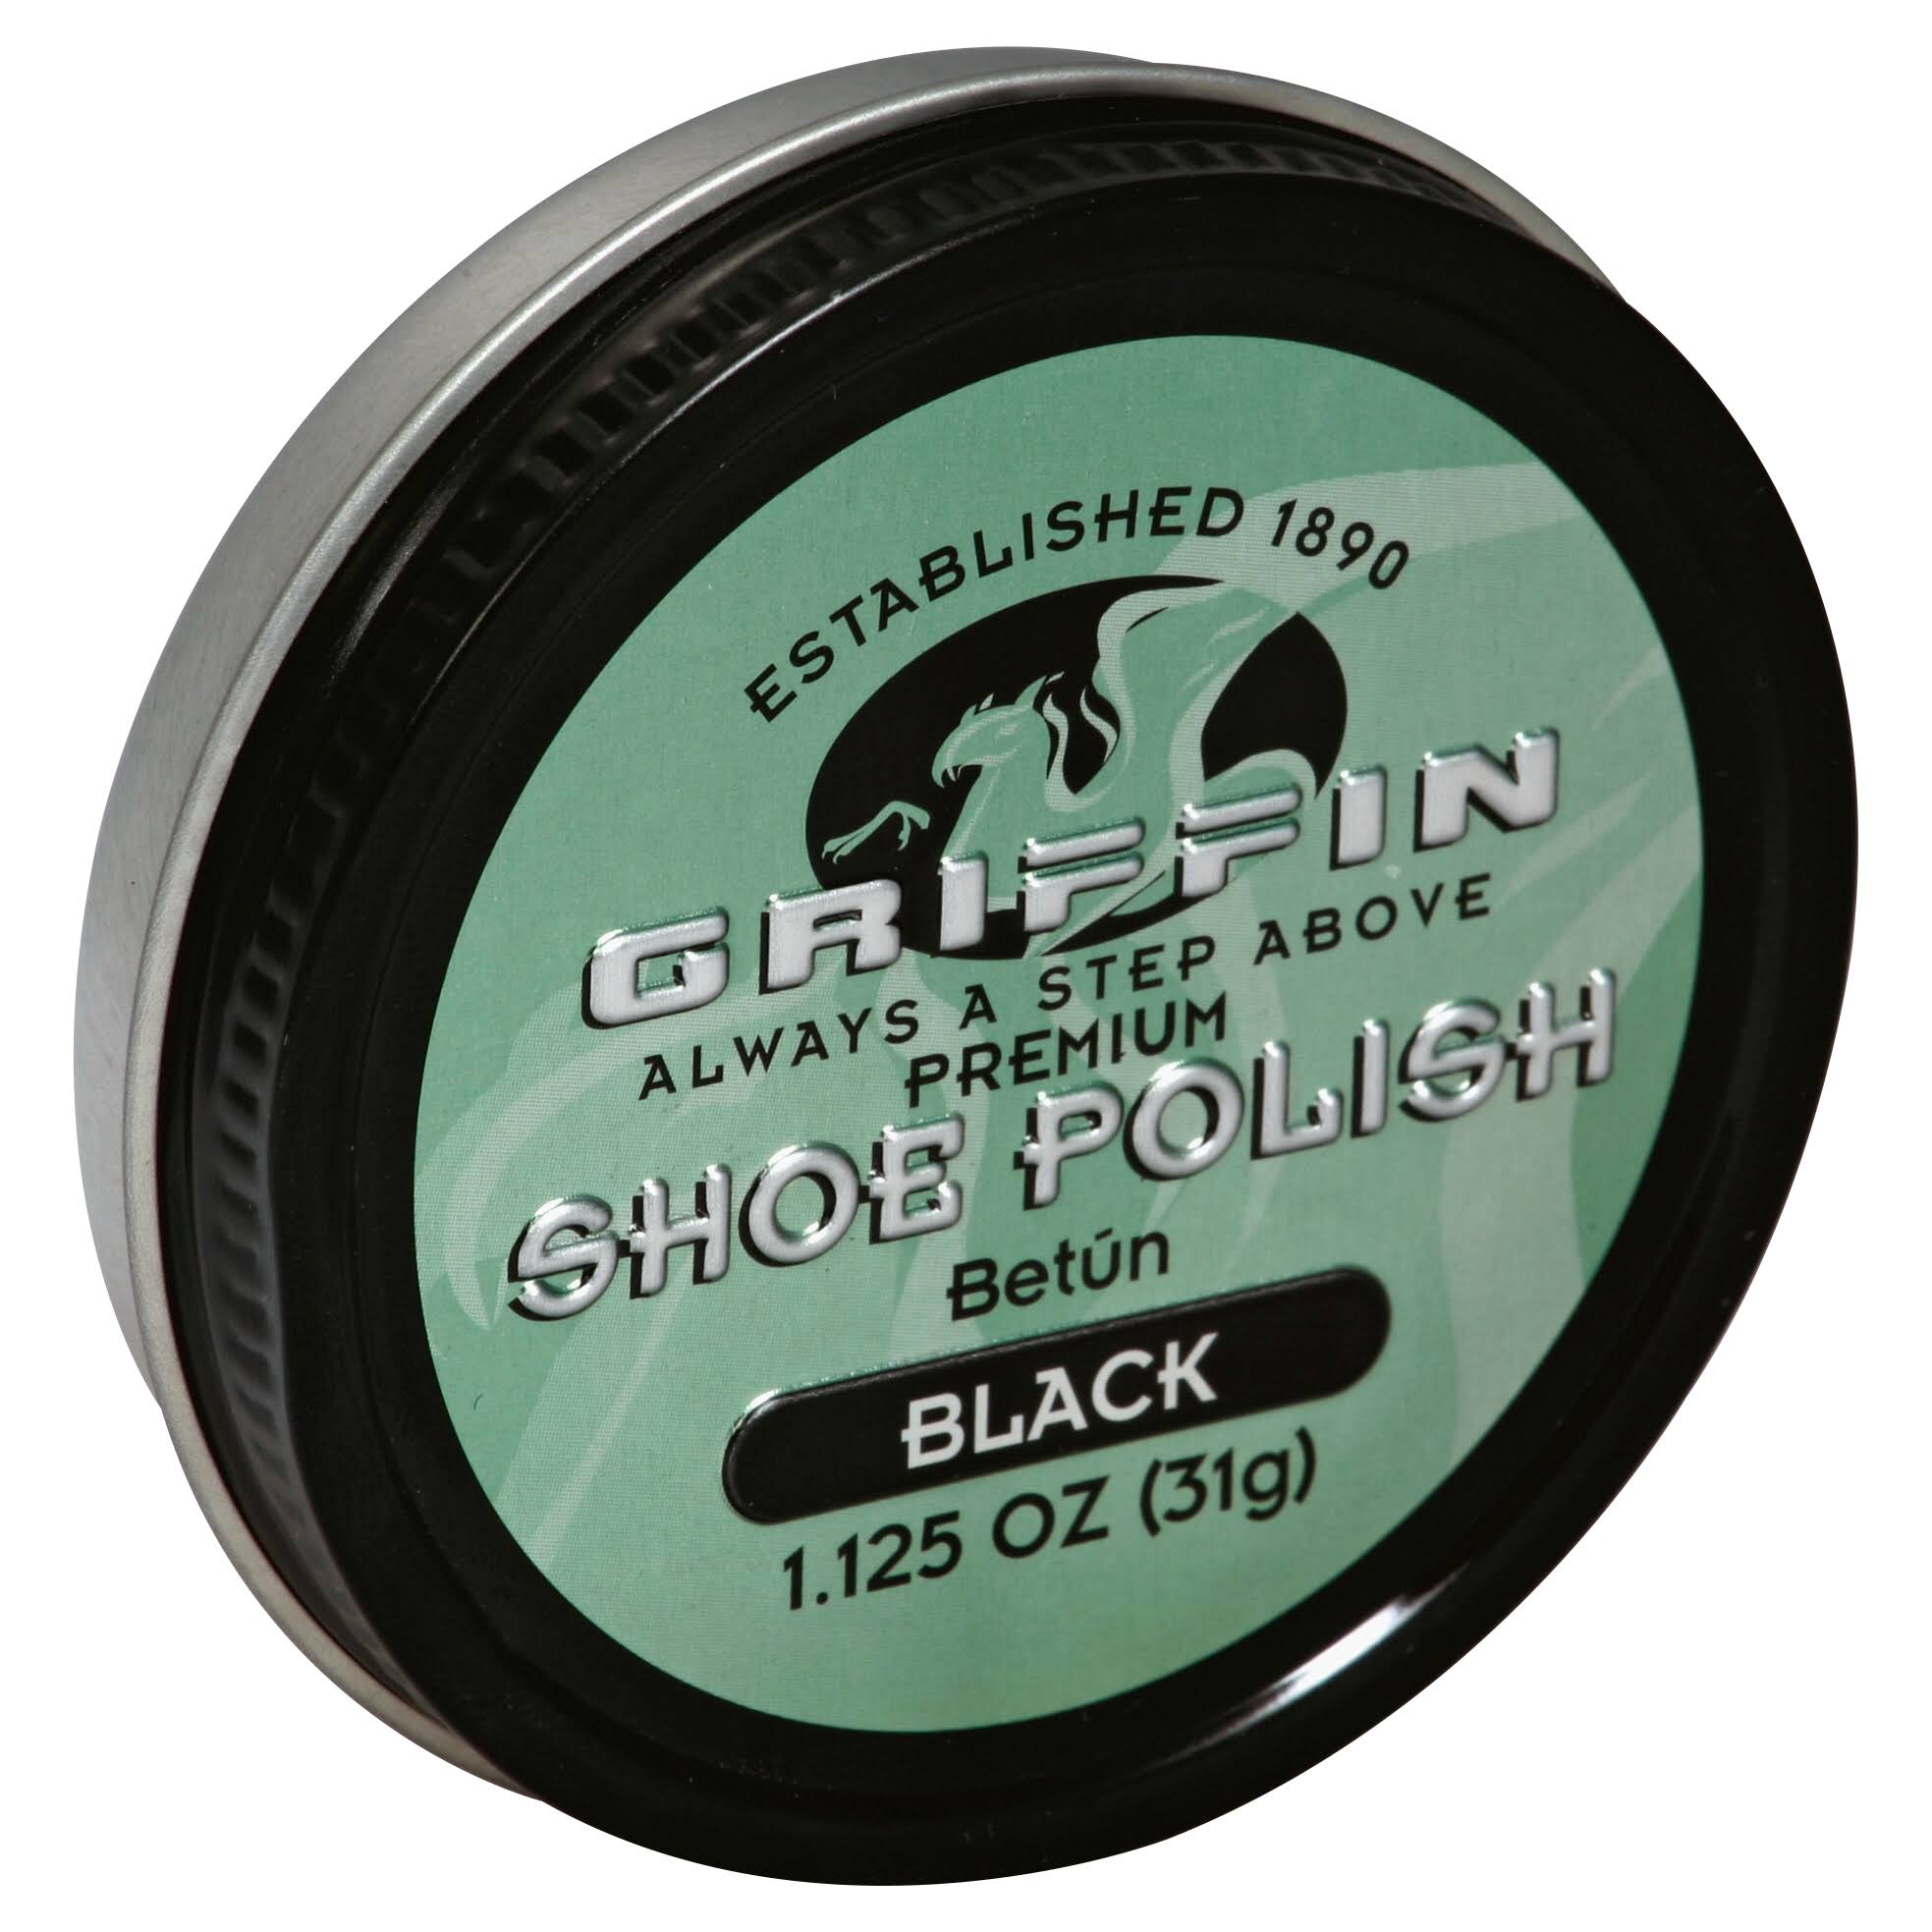 Griffin Shoe Polish - Black, 31g